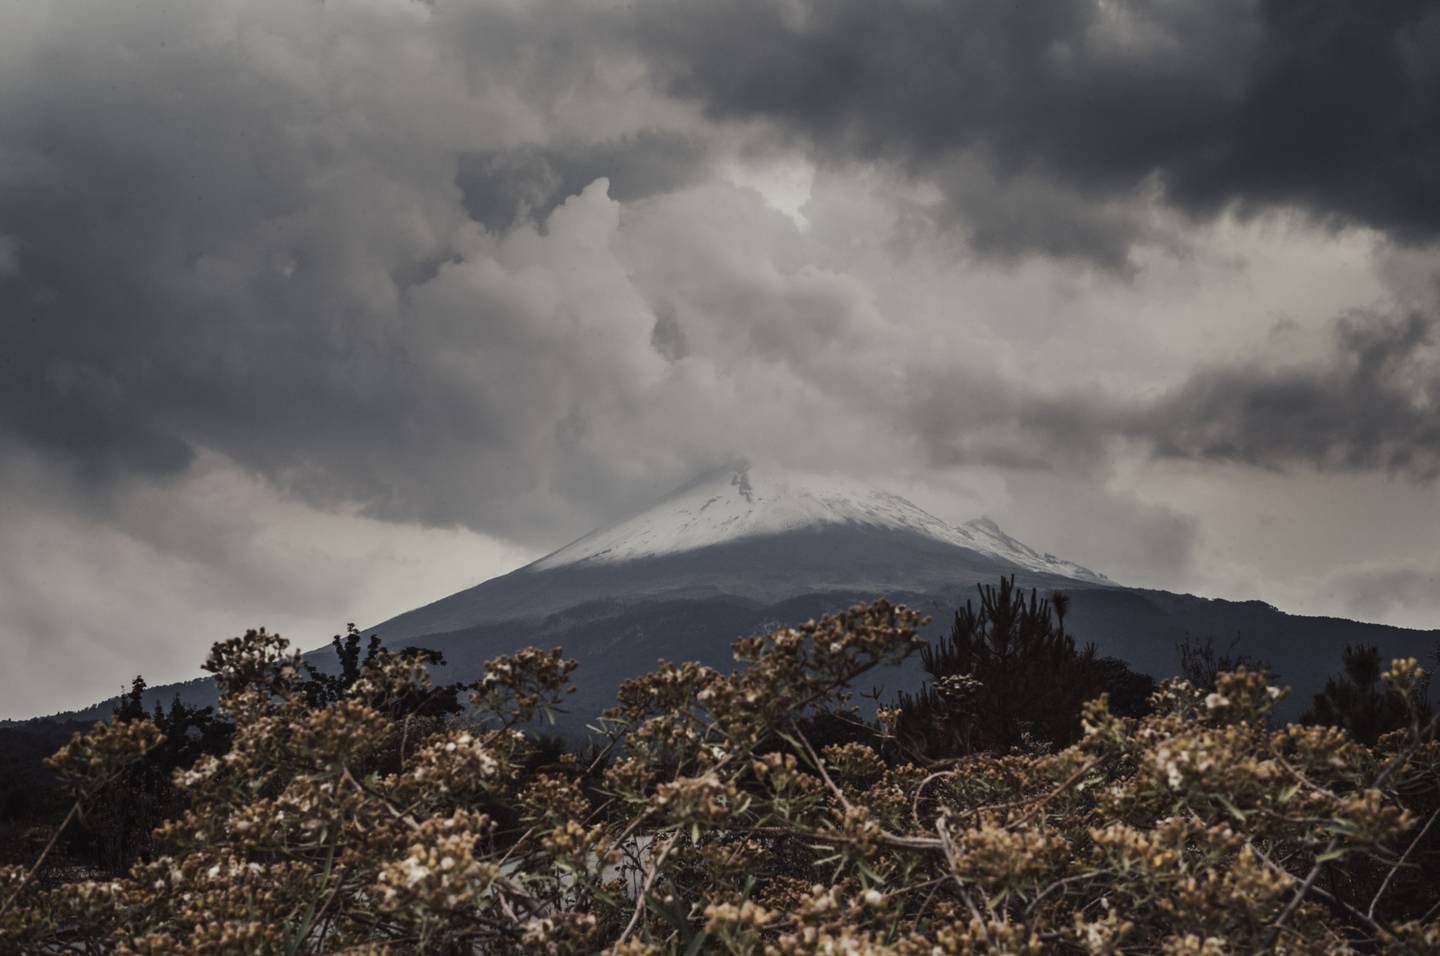 Las autoridades emitieron advertencias a los residentes ante el aumento de la actividad en el Popocatépetl, uno de los volcanes más activos de México.dfd